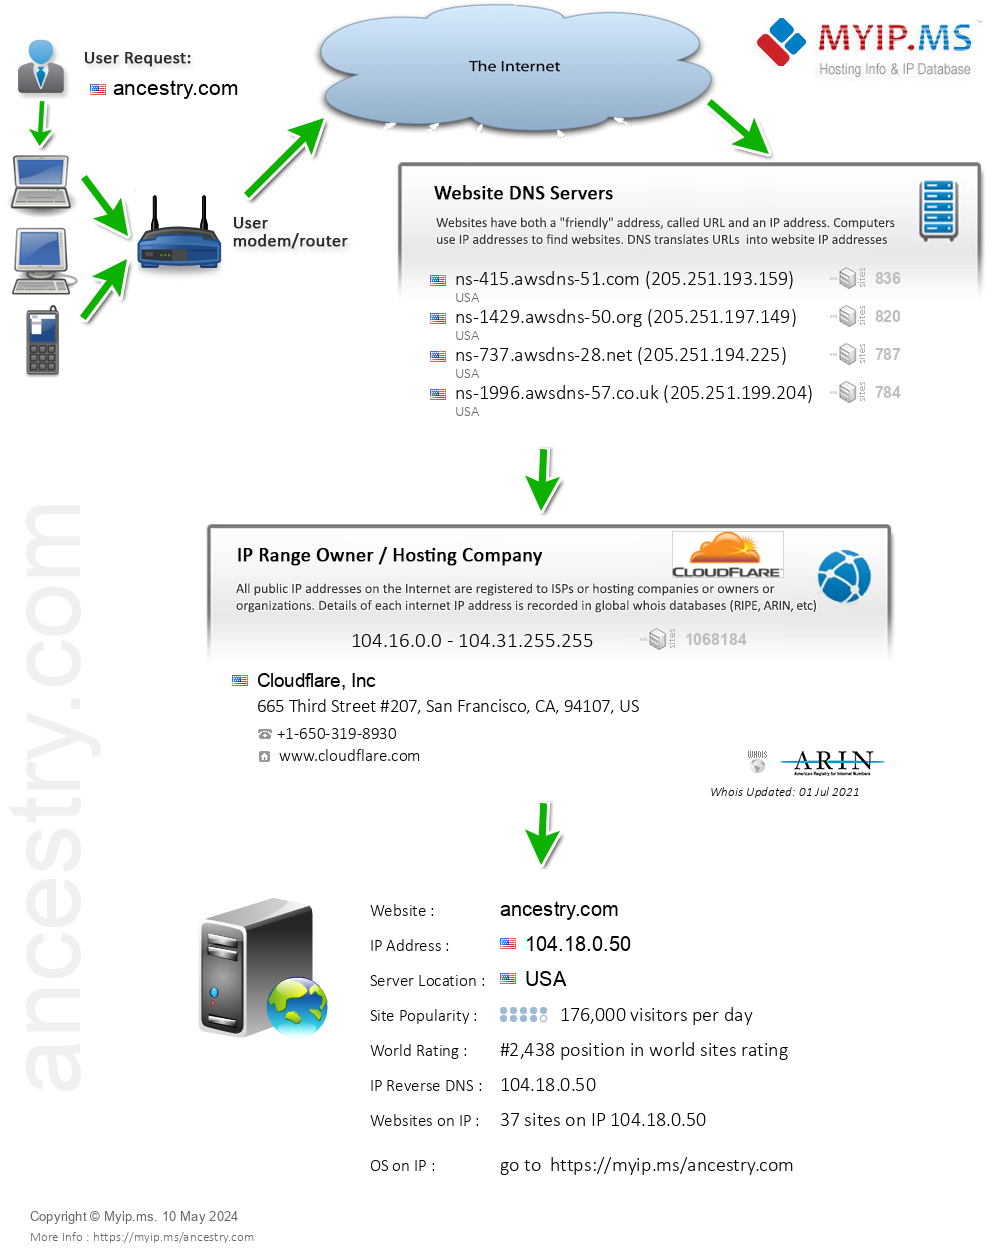 Ancestry.com - Website Hosting Visual IP Diagram